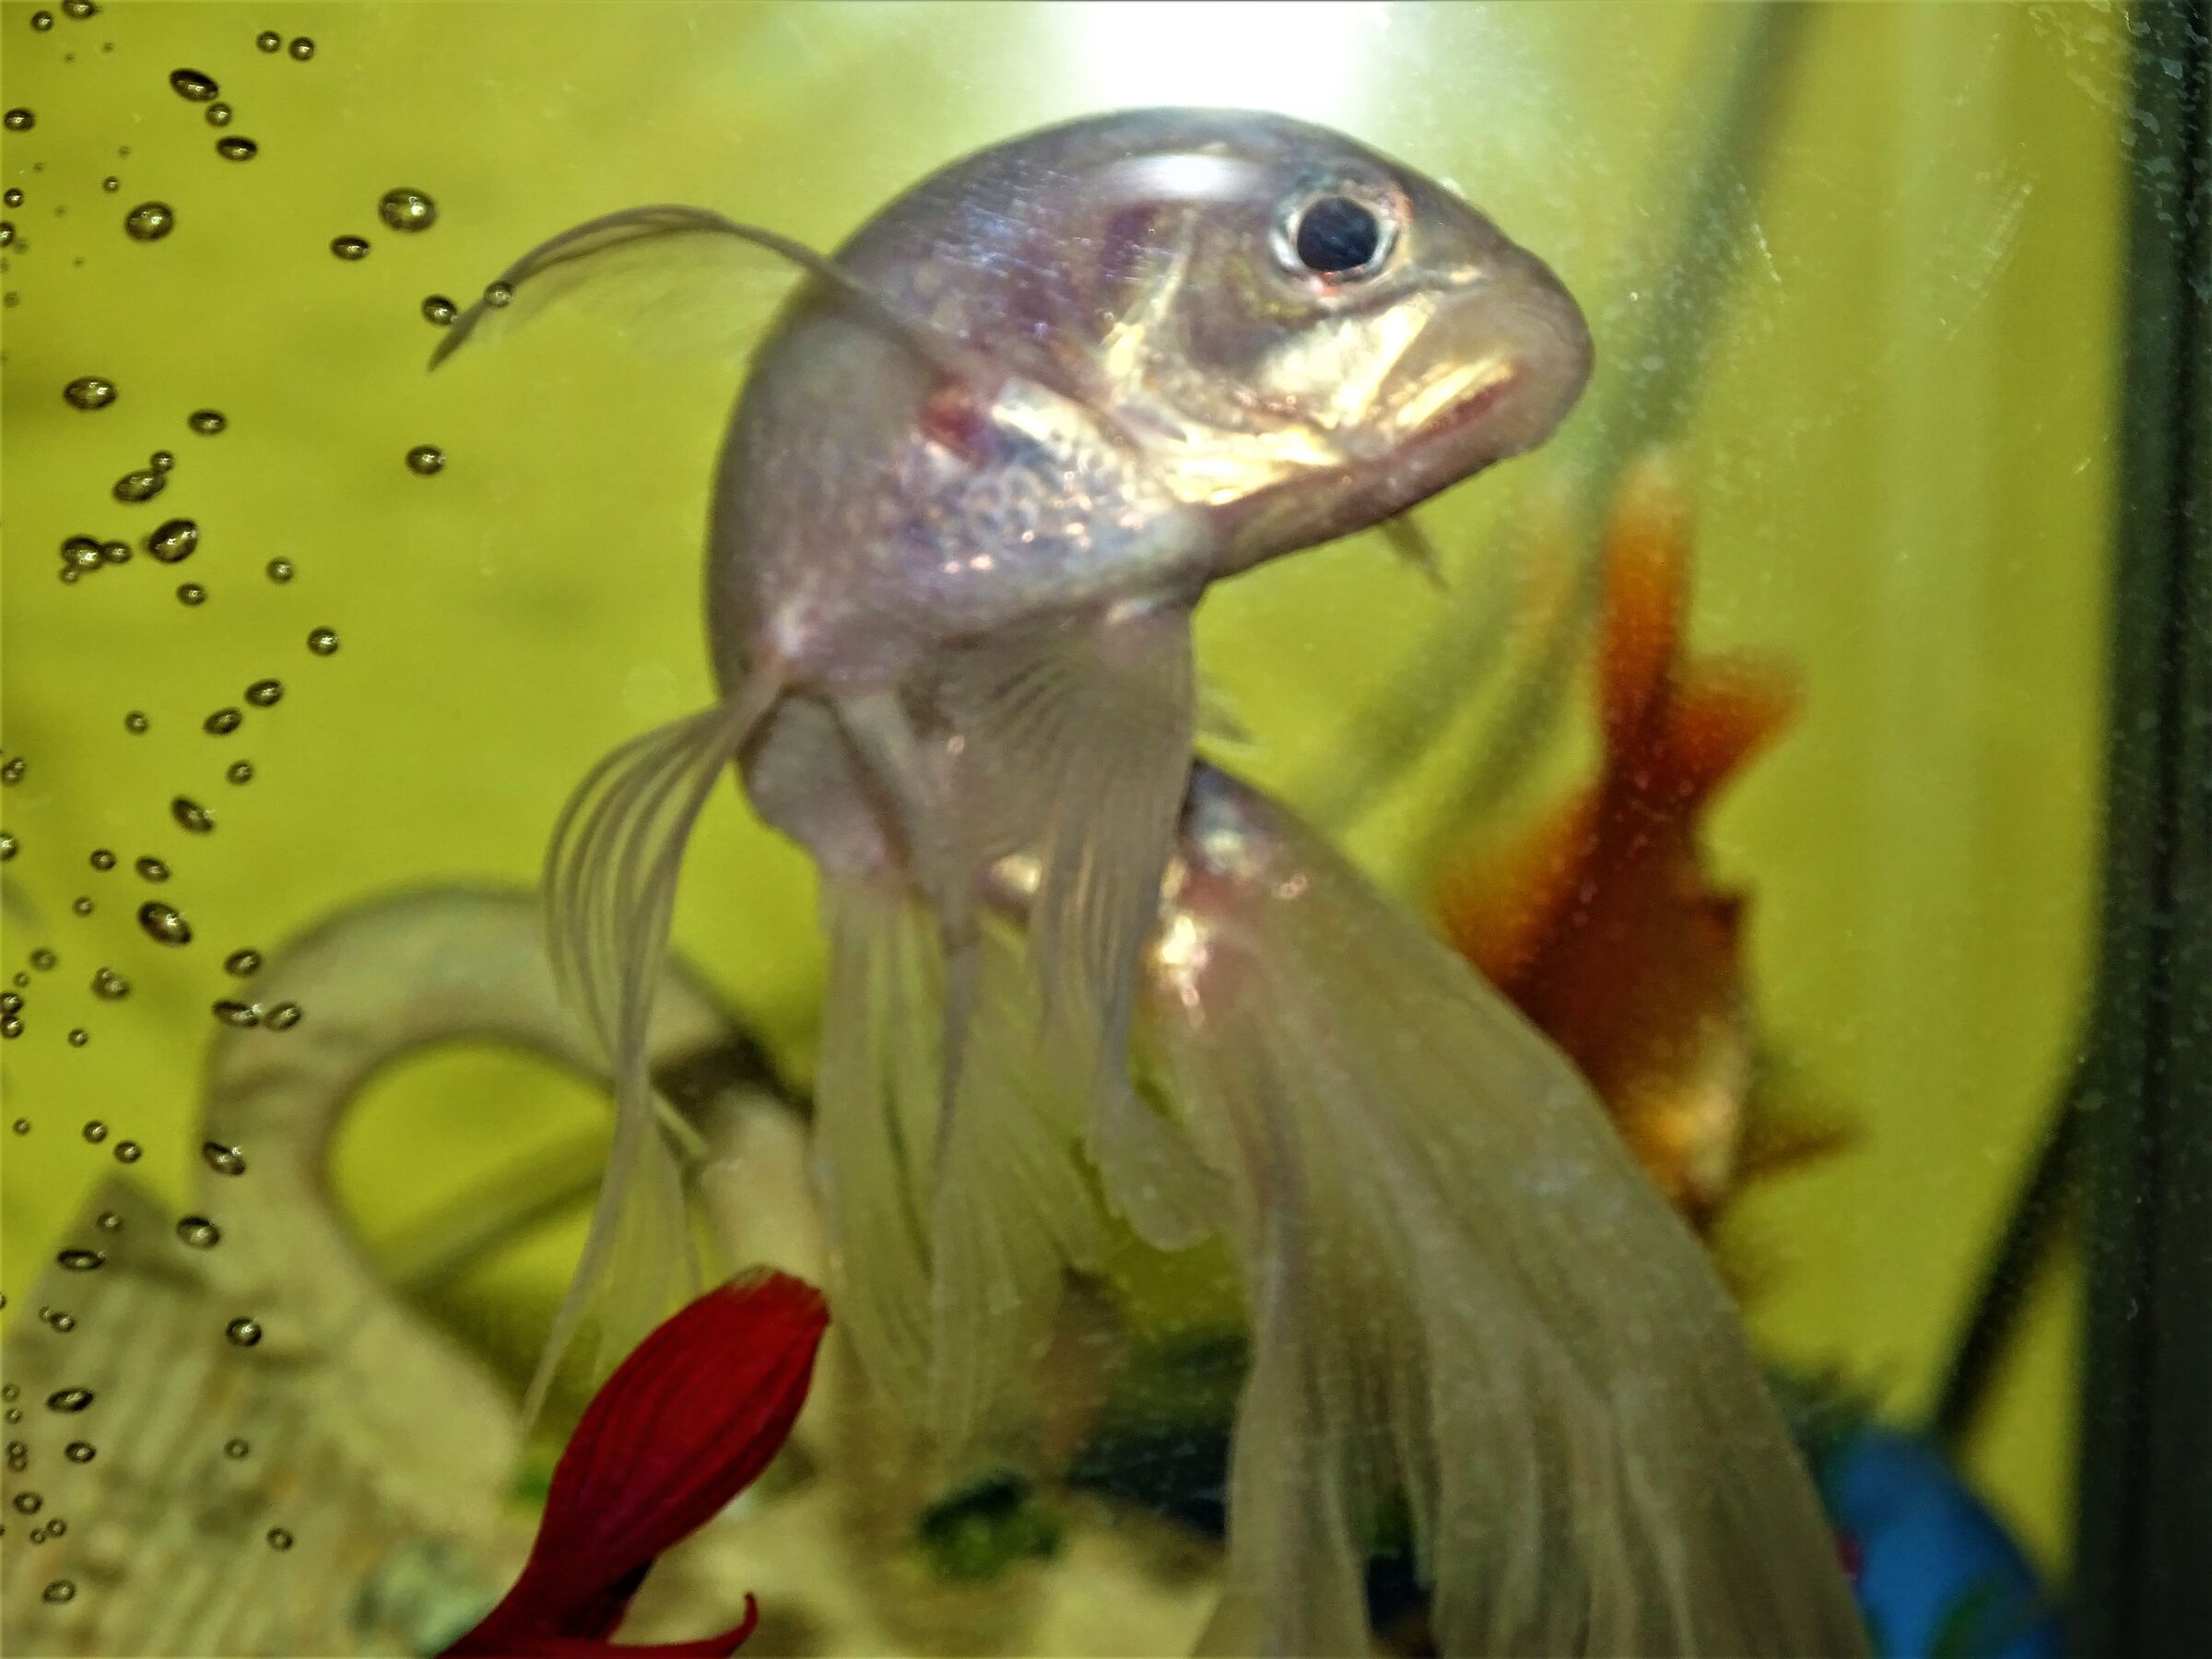 albino fish.....